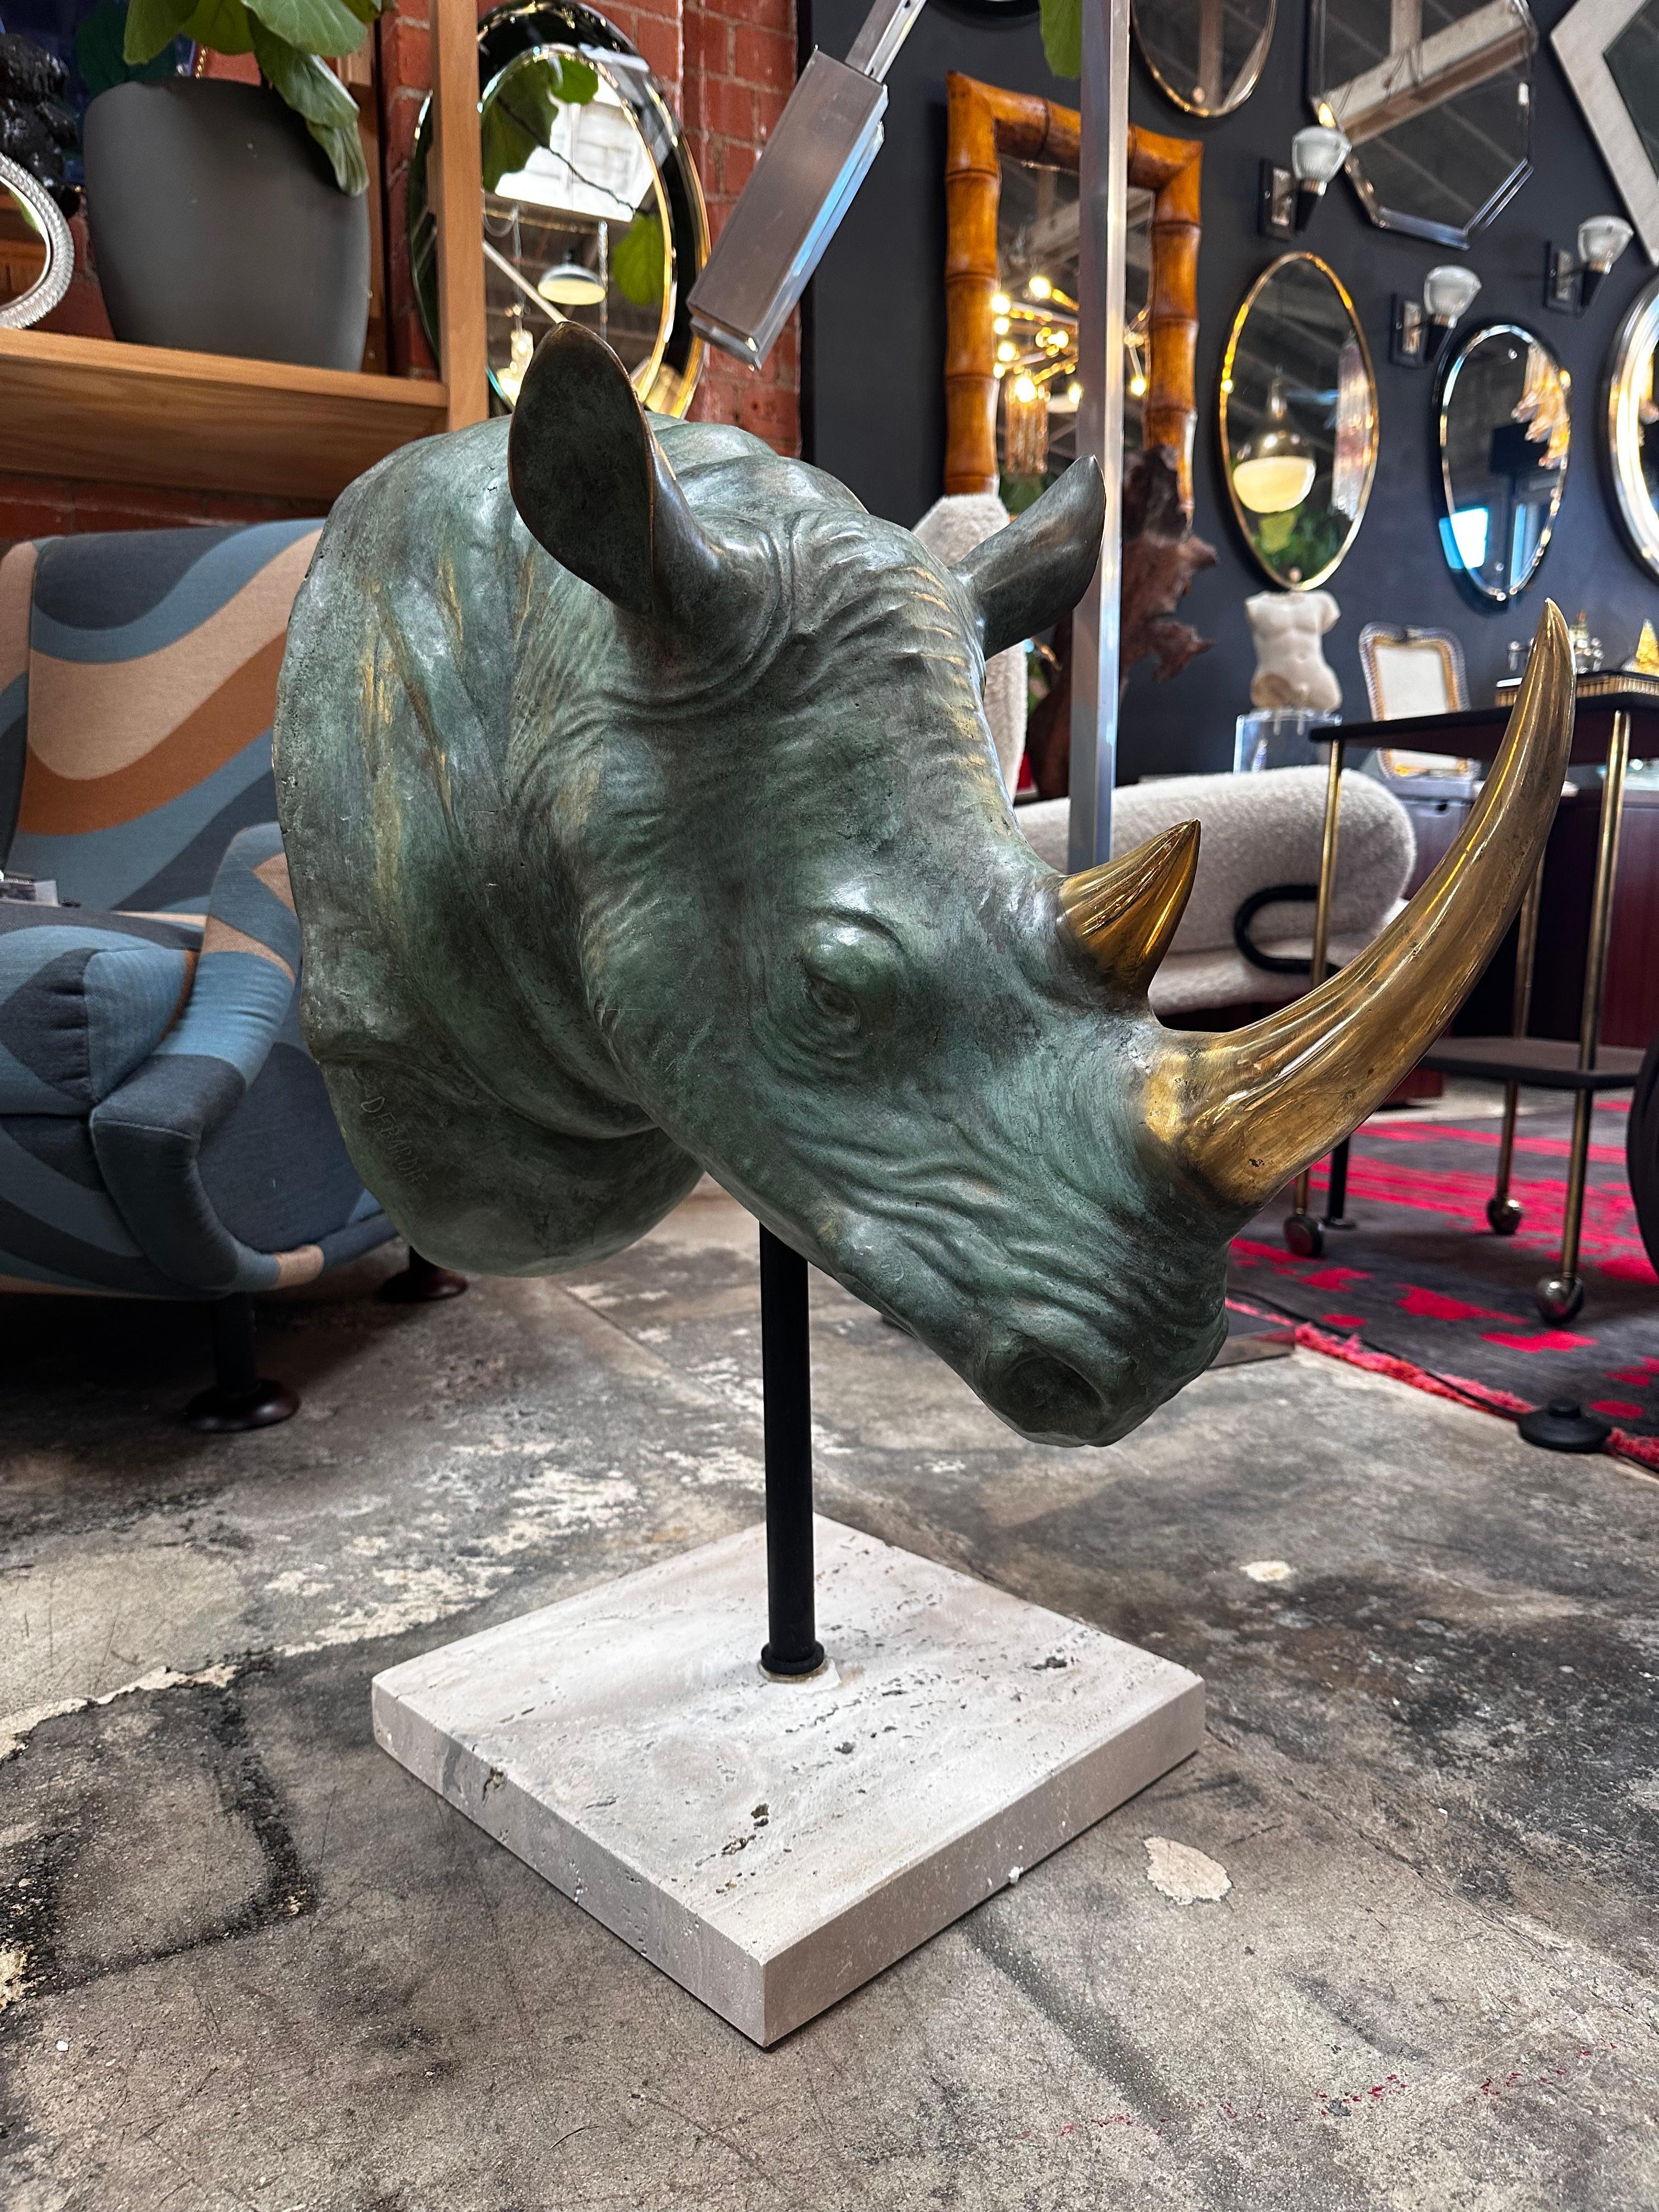 Die Vintage Italian Rhino Bronze Sculpture aus den 1970er Jahren ist ein auffälliges Stück, das einen Nashornkopf zeigt, der komplett aus Bronze gefertigt ist. Elegant präsentiert er sich auf einem quadratischen Travertin-Sockel und fängt mit seiner